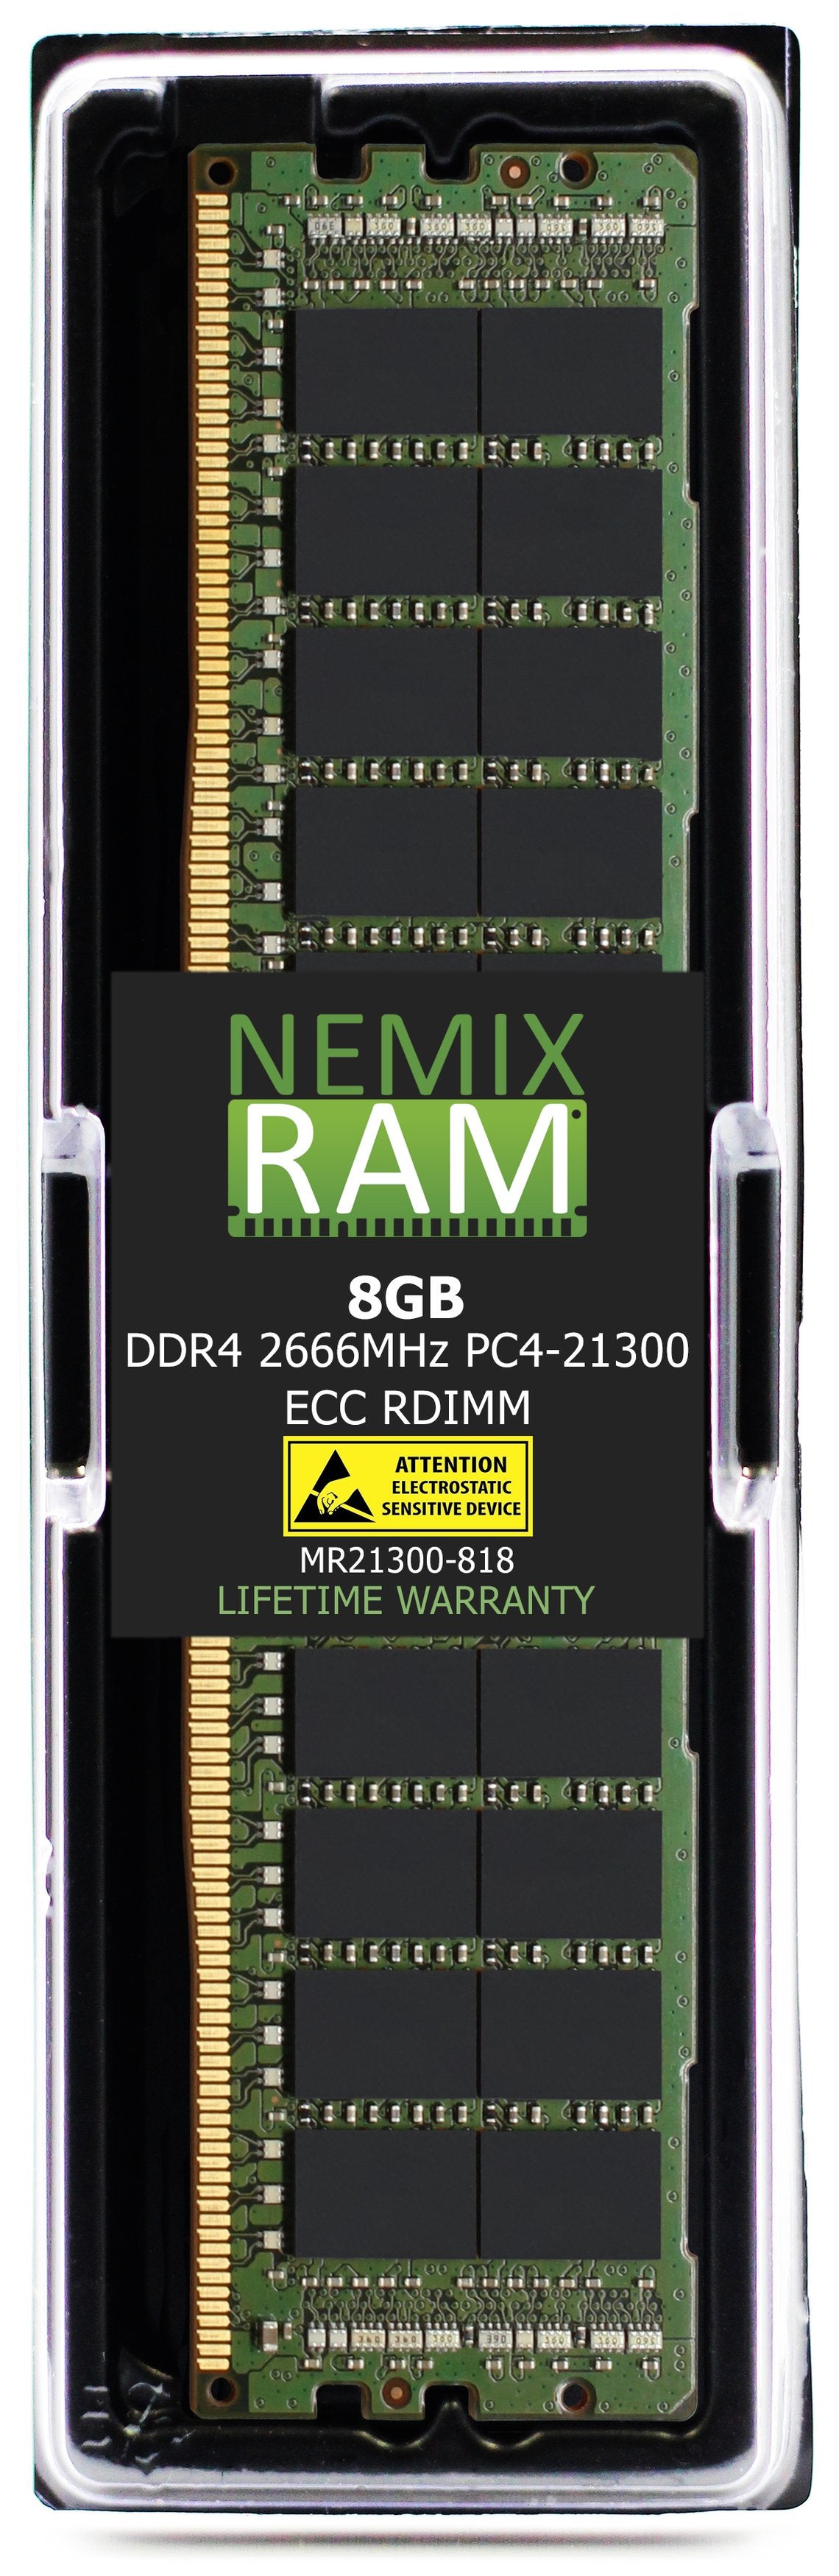 8GB DDR4 2666MHZ PC4-21300 RDIMM Compatible with Supermicro MEM-DR480L-CL01-ER29